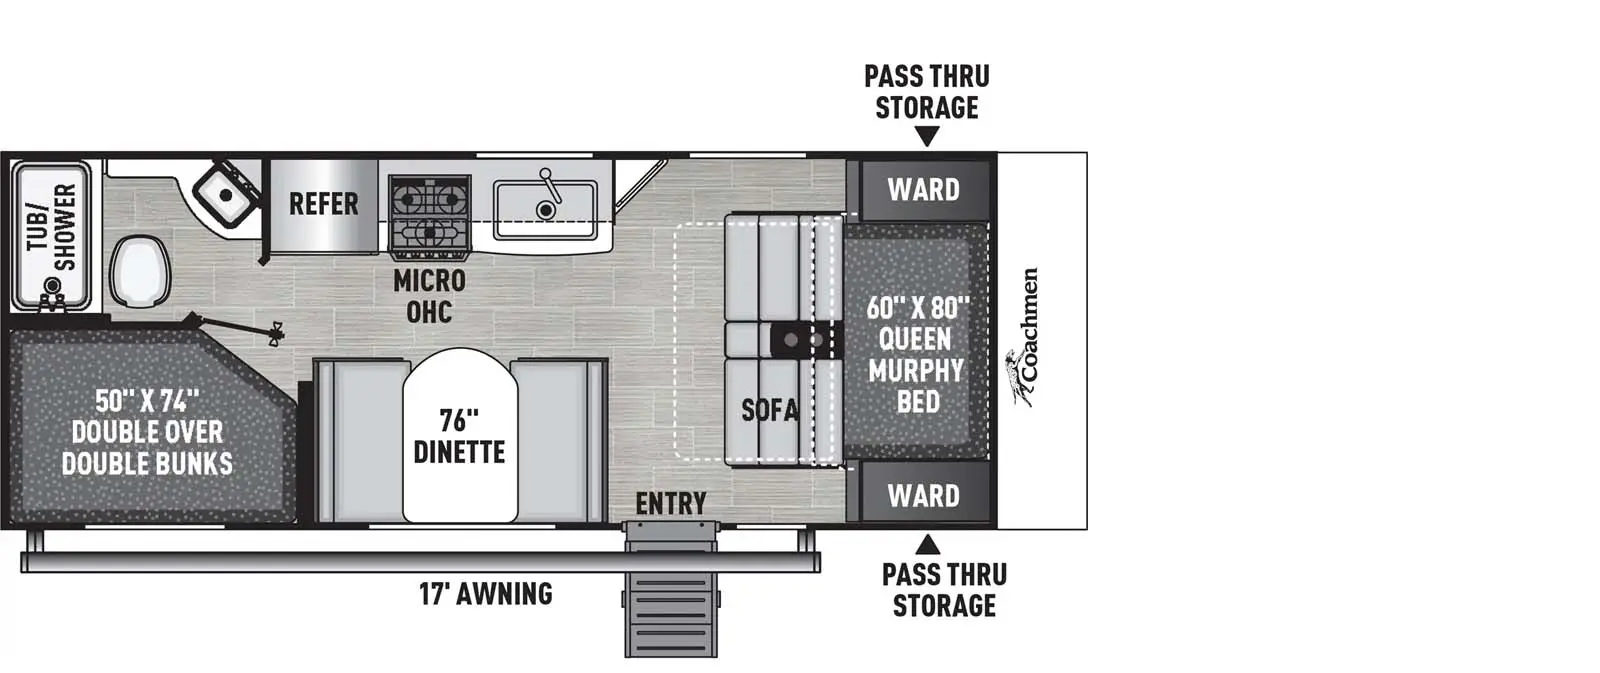 22SE Floorplan Image